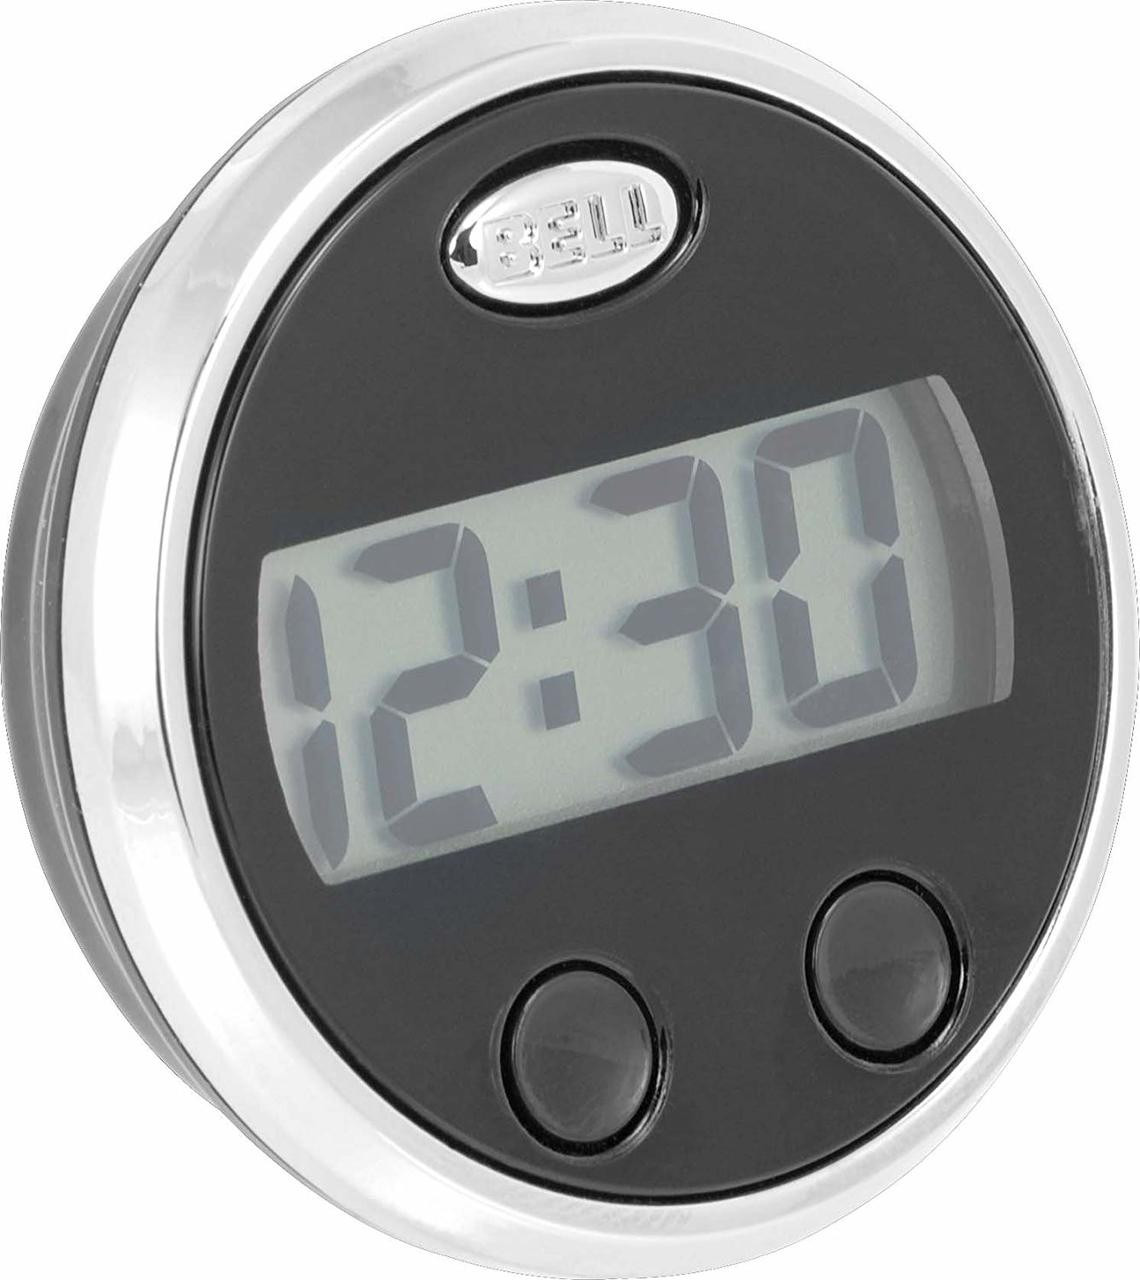 Kaufe Autouhr-Thermometer, 2-in-1-Digitaluhr und Temperaturmessgerät mit  hintergrundbeleuchtetem LCD-Display, 12 Stunden bis 24 Stunden